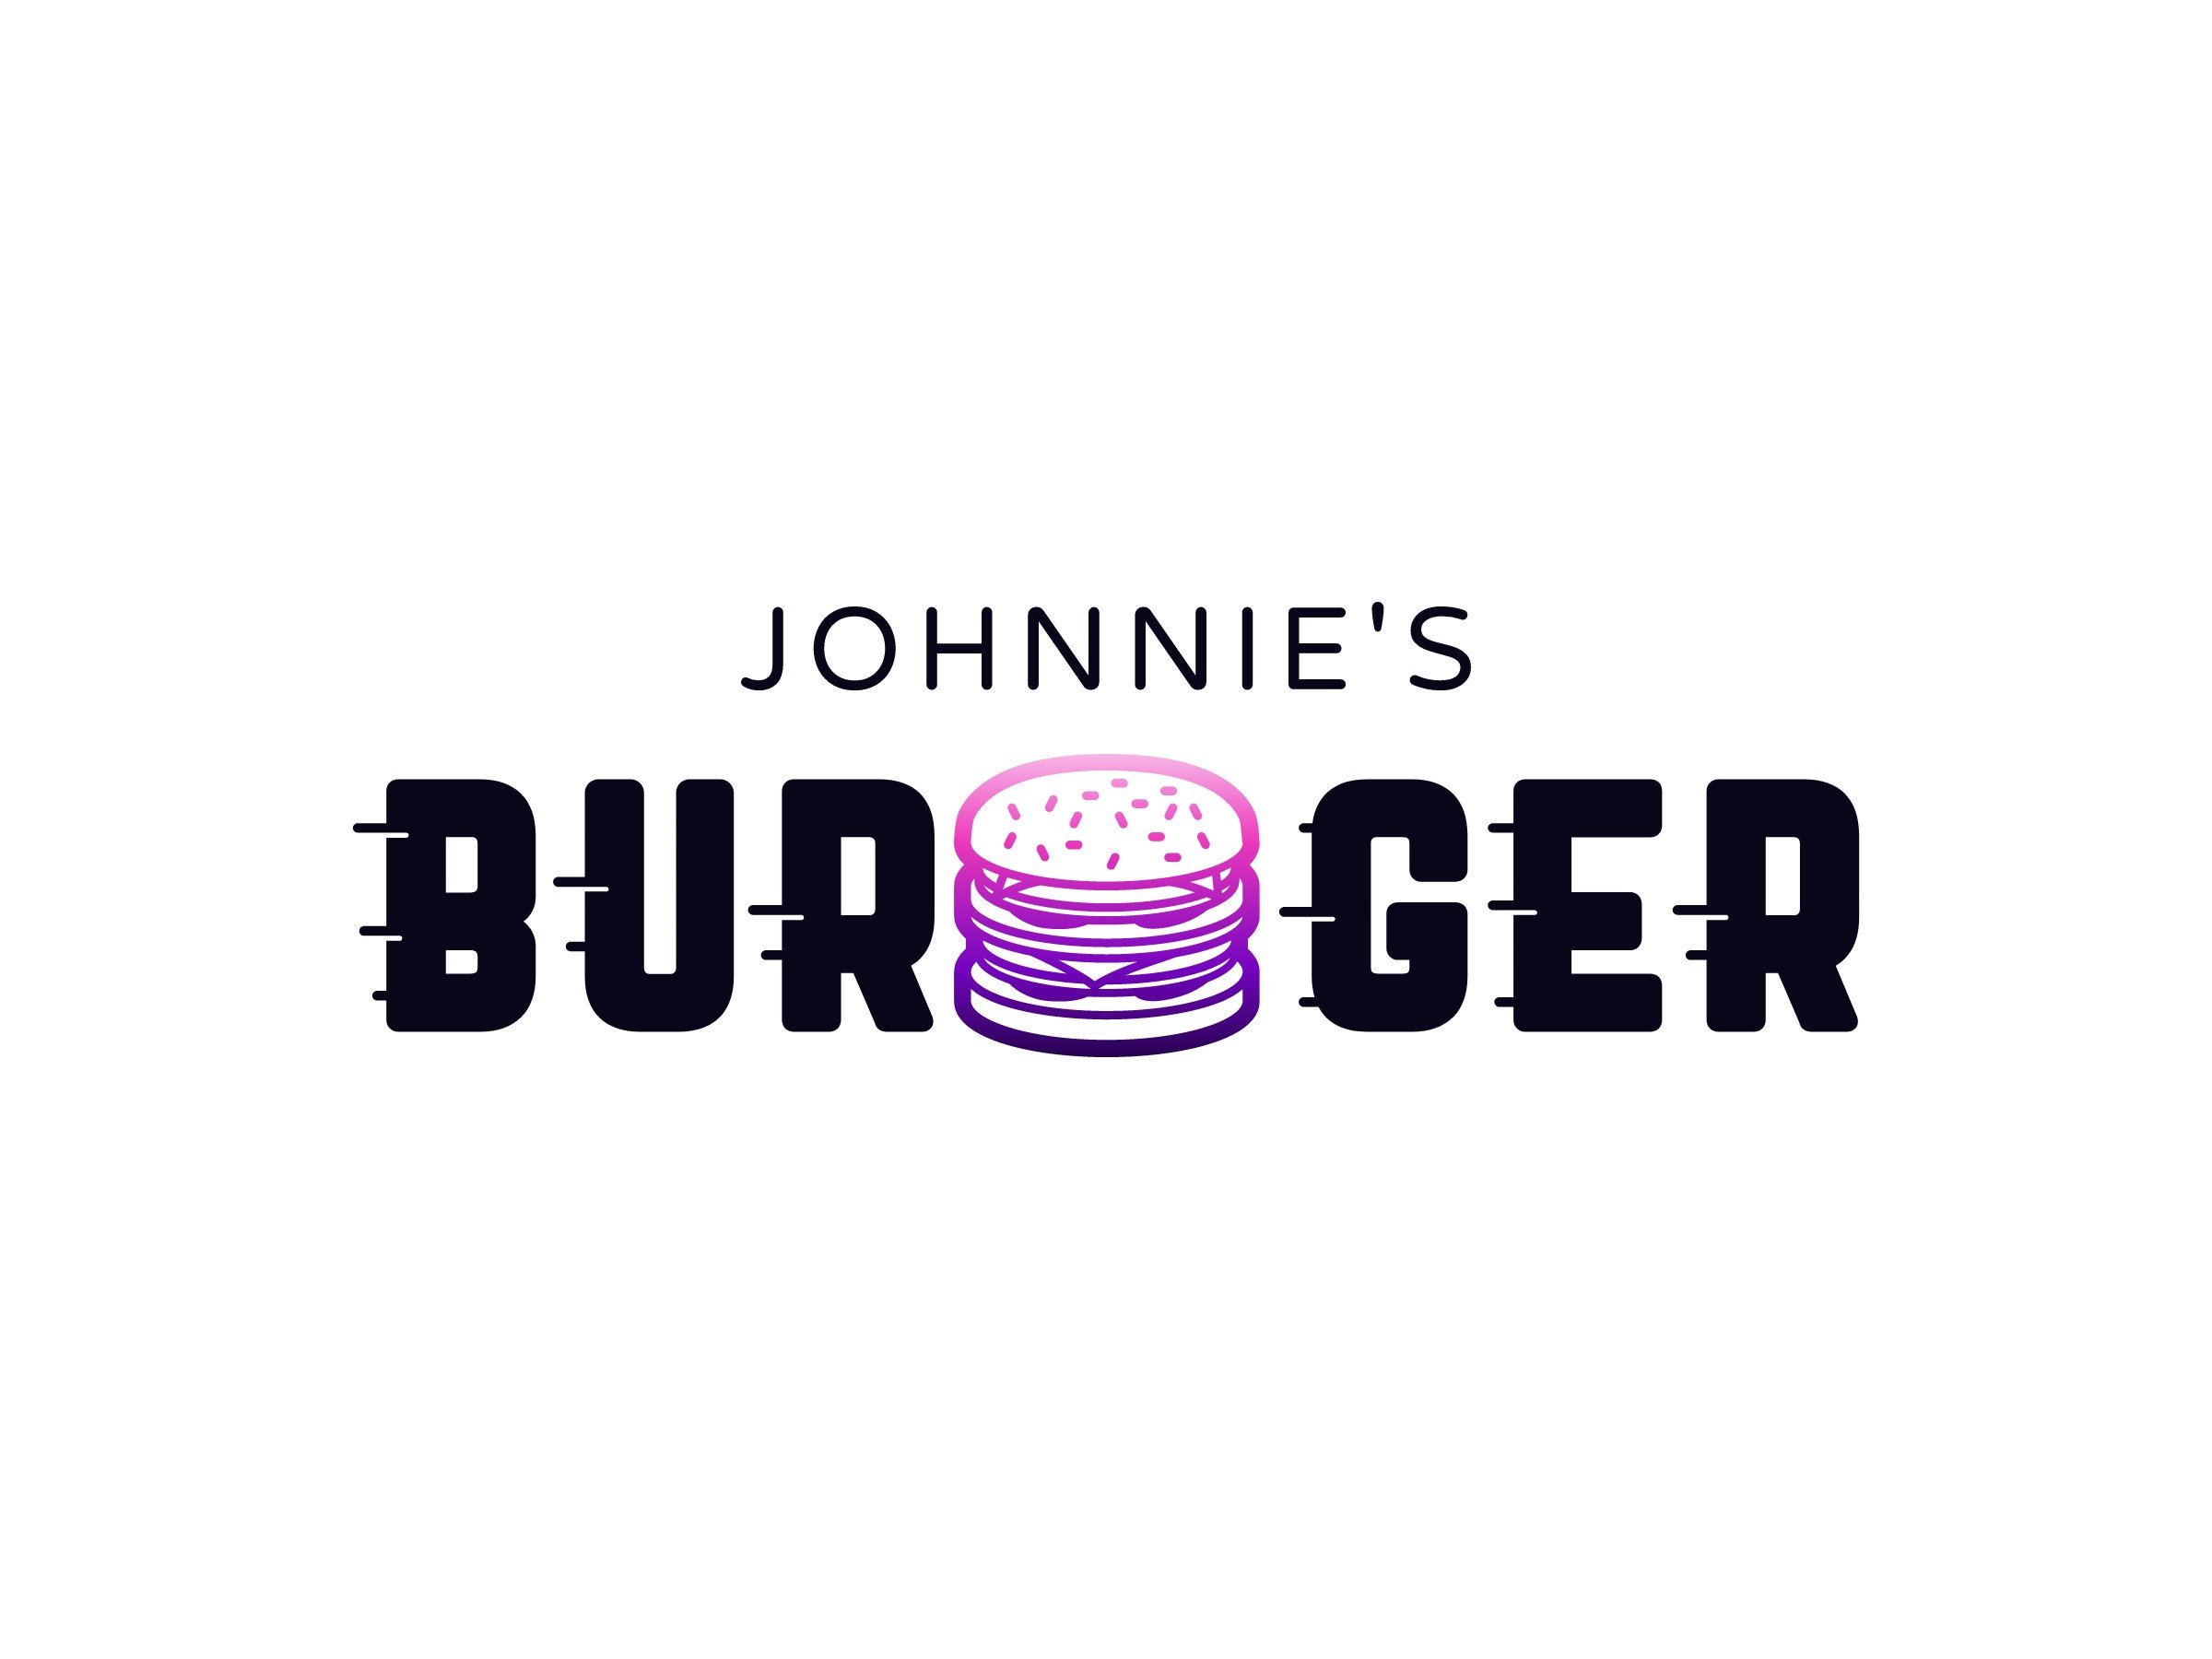 burger - Johnnie's